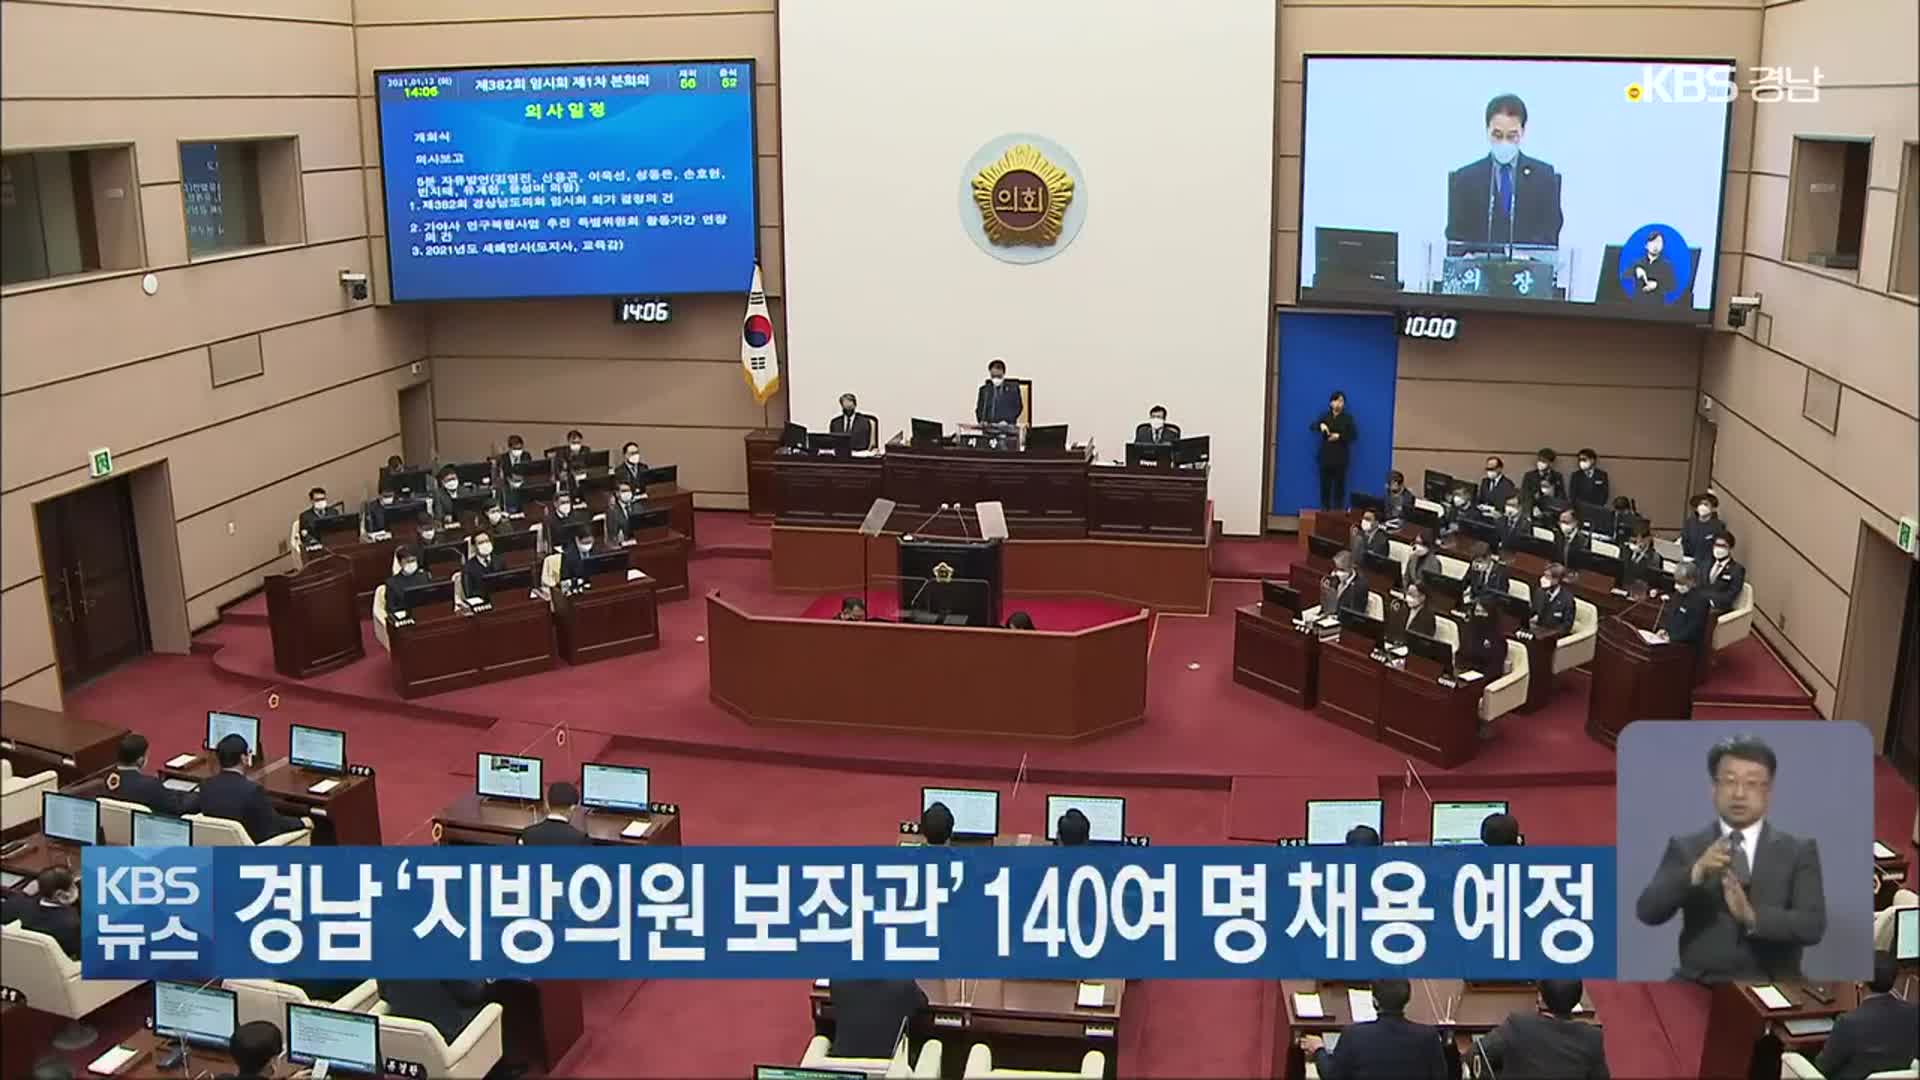 경남 ‘지방의원 보좌관’ 140여 명 채용 예정